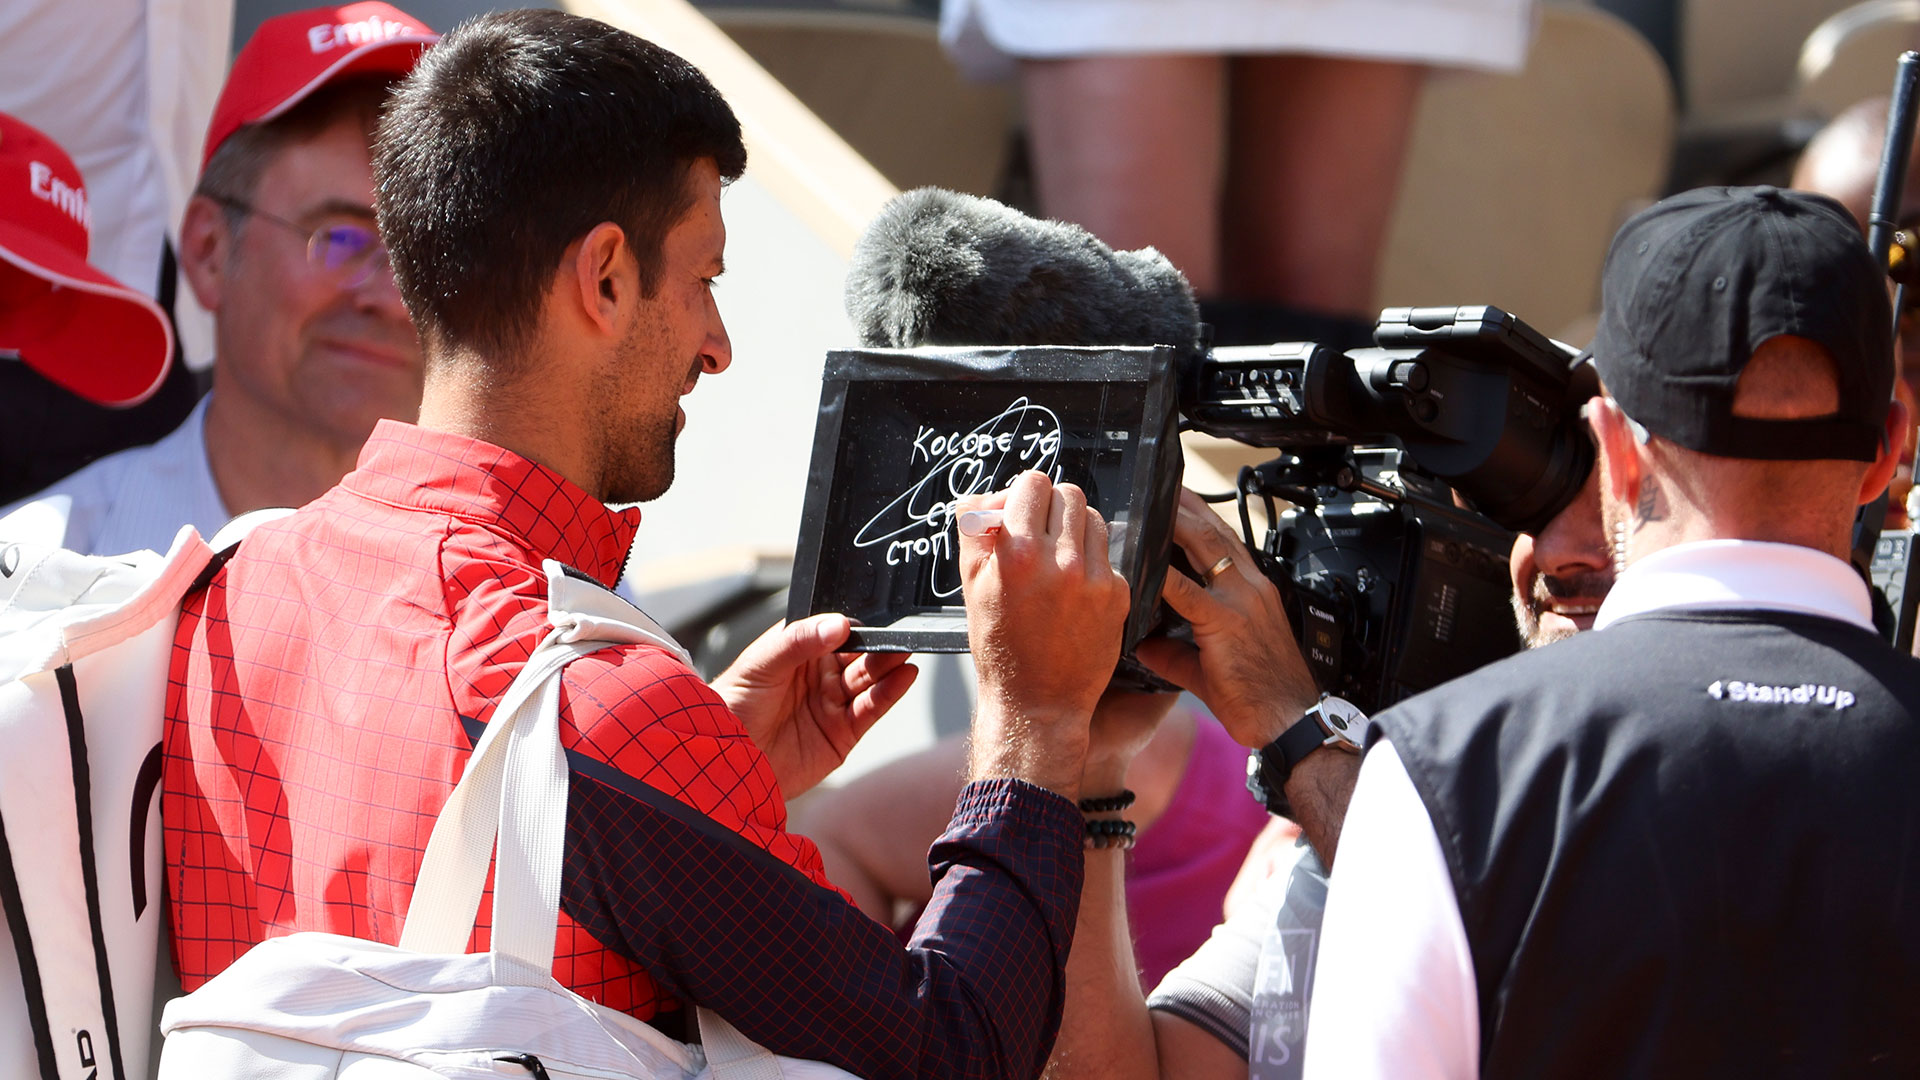 Novak Djokovic lanzó un mensaje político en Roland Garros y desató otra polémica: “Kosovo es el corazón de Serbia”